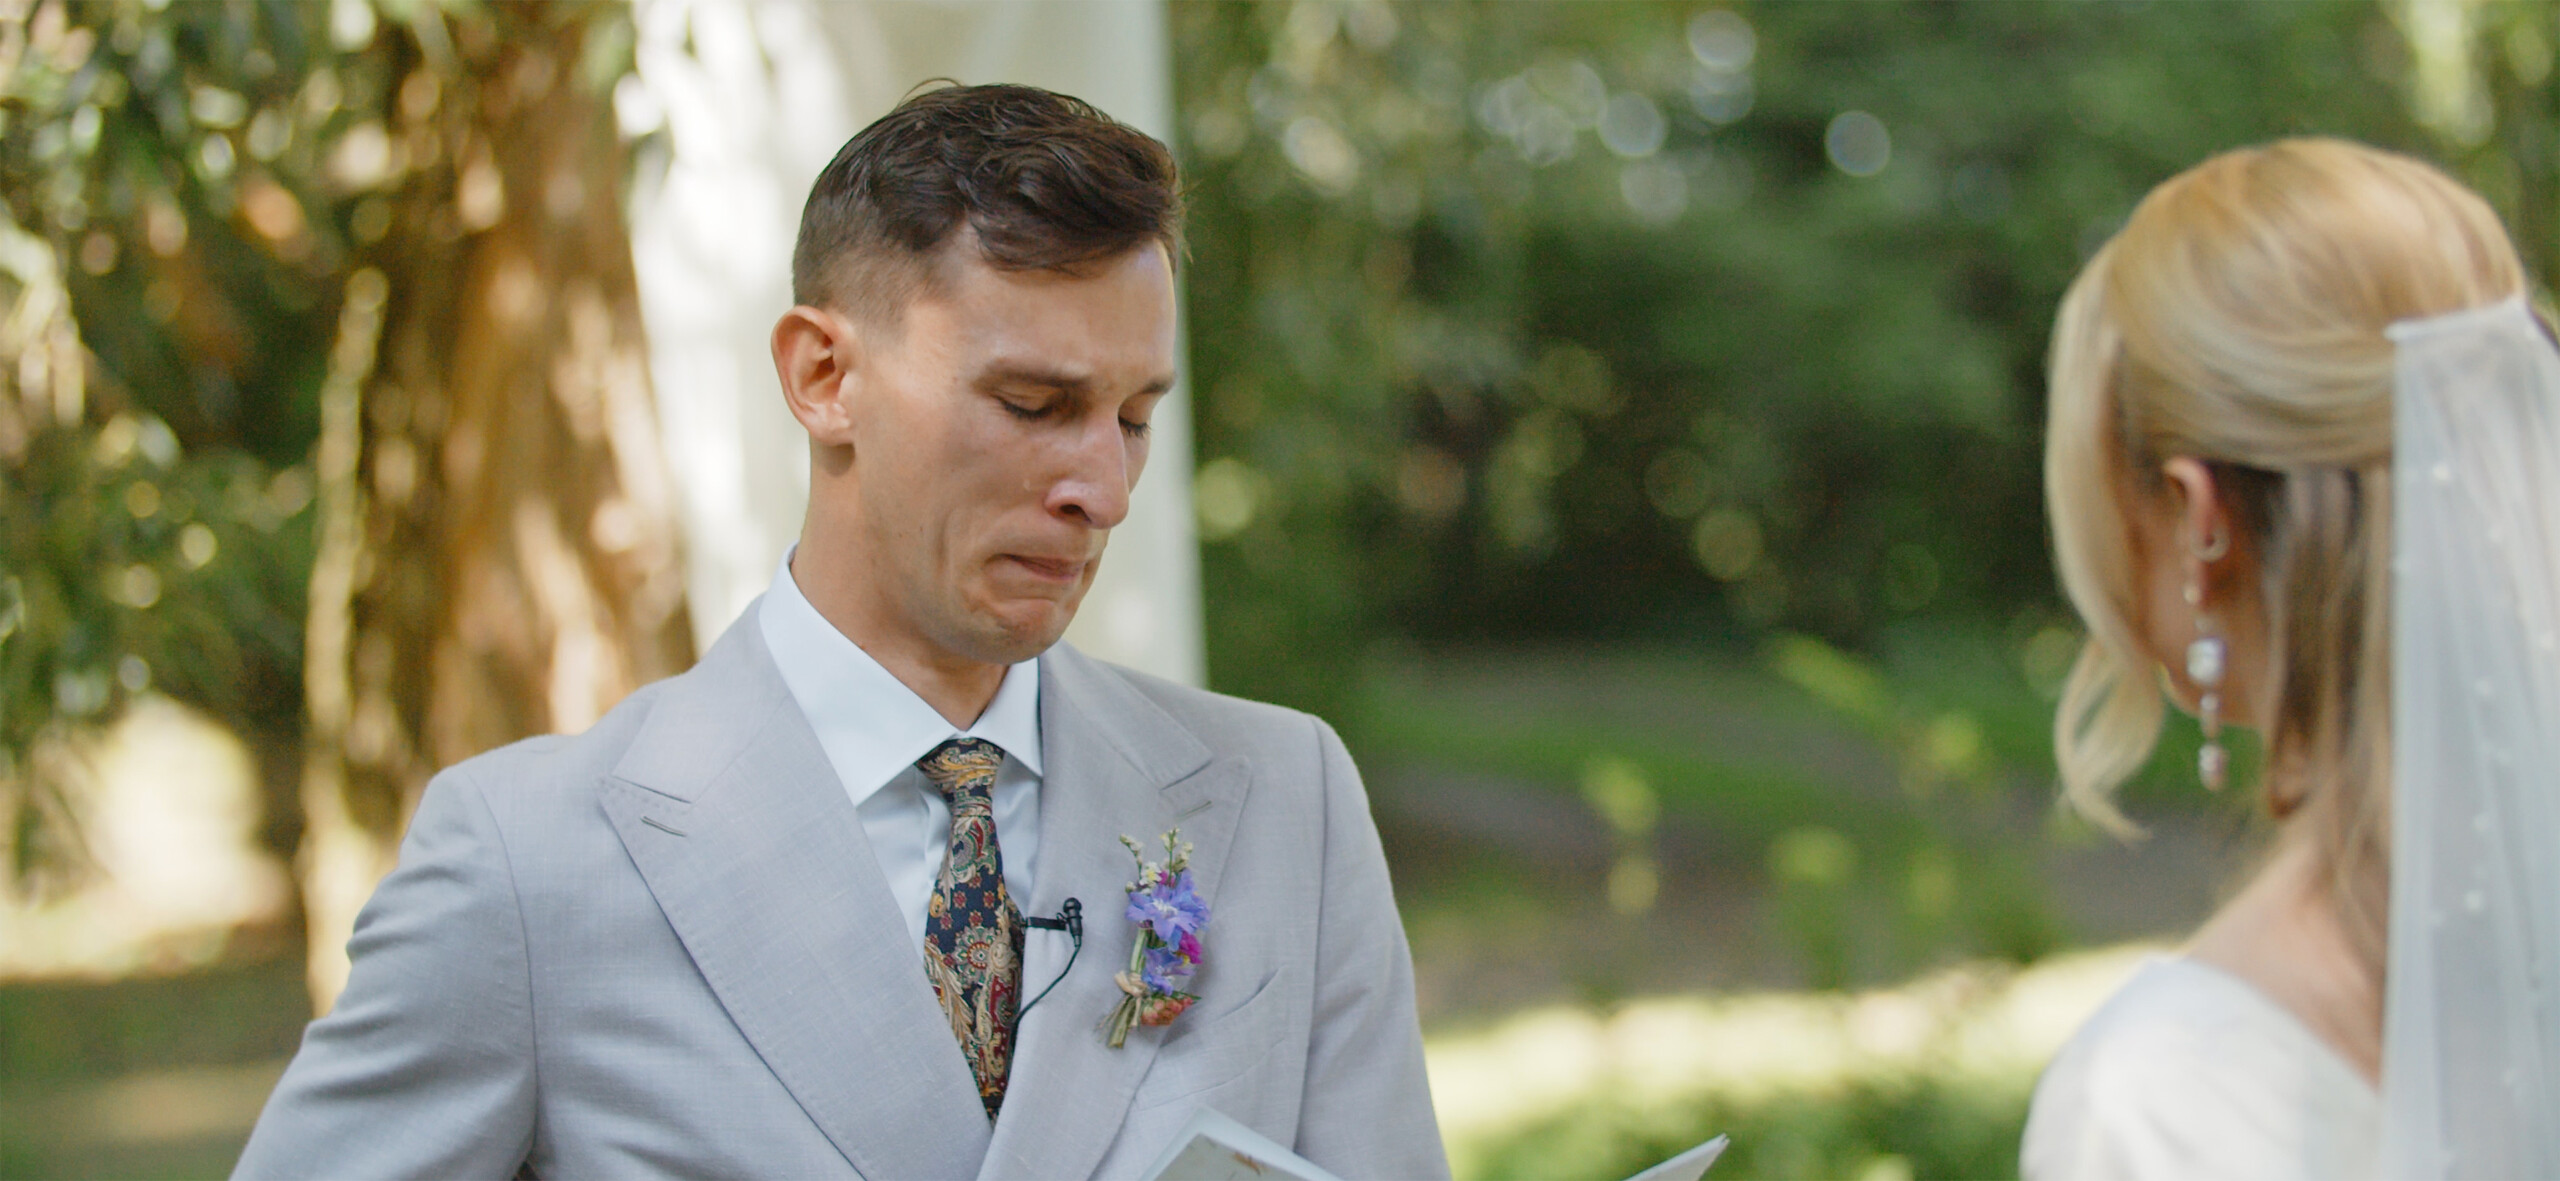 Emotional Groom Breaks Down In Tears During Wedding Vows